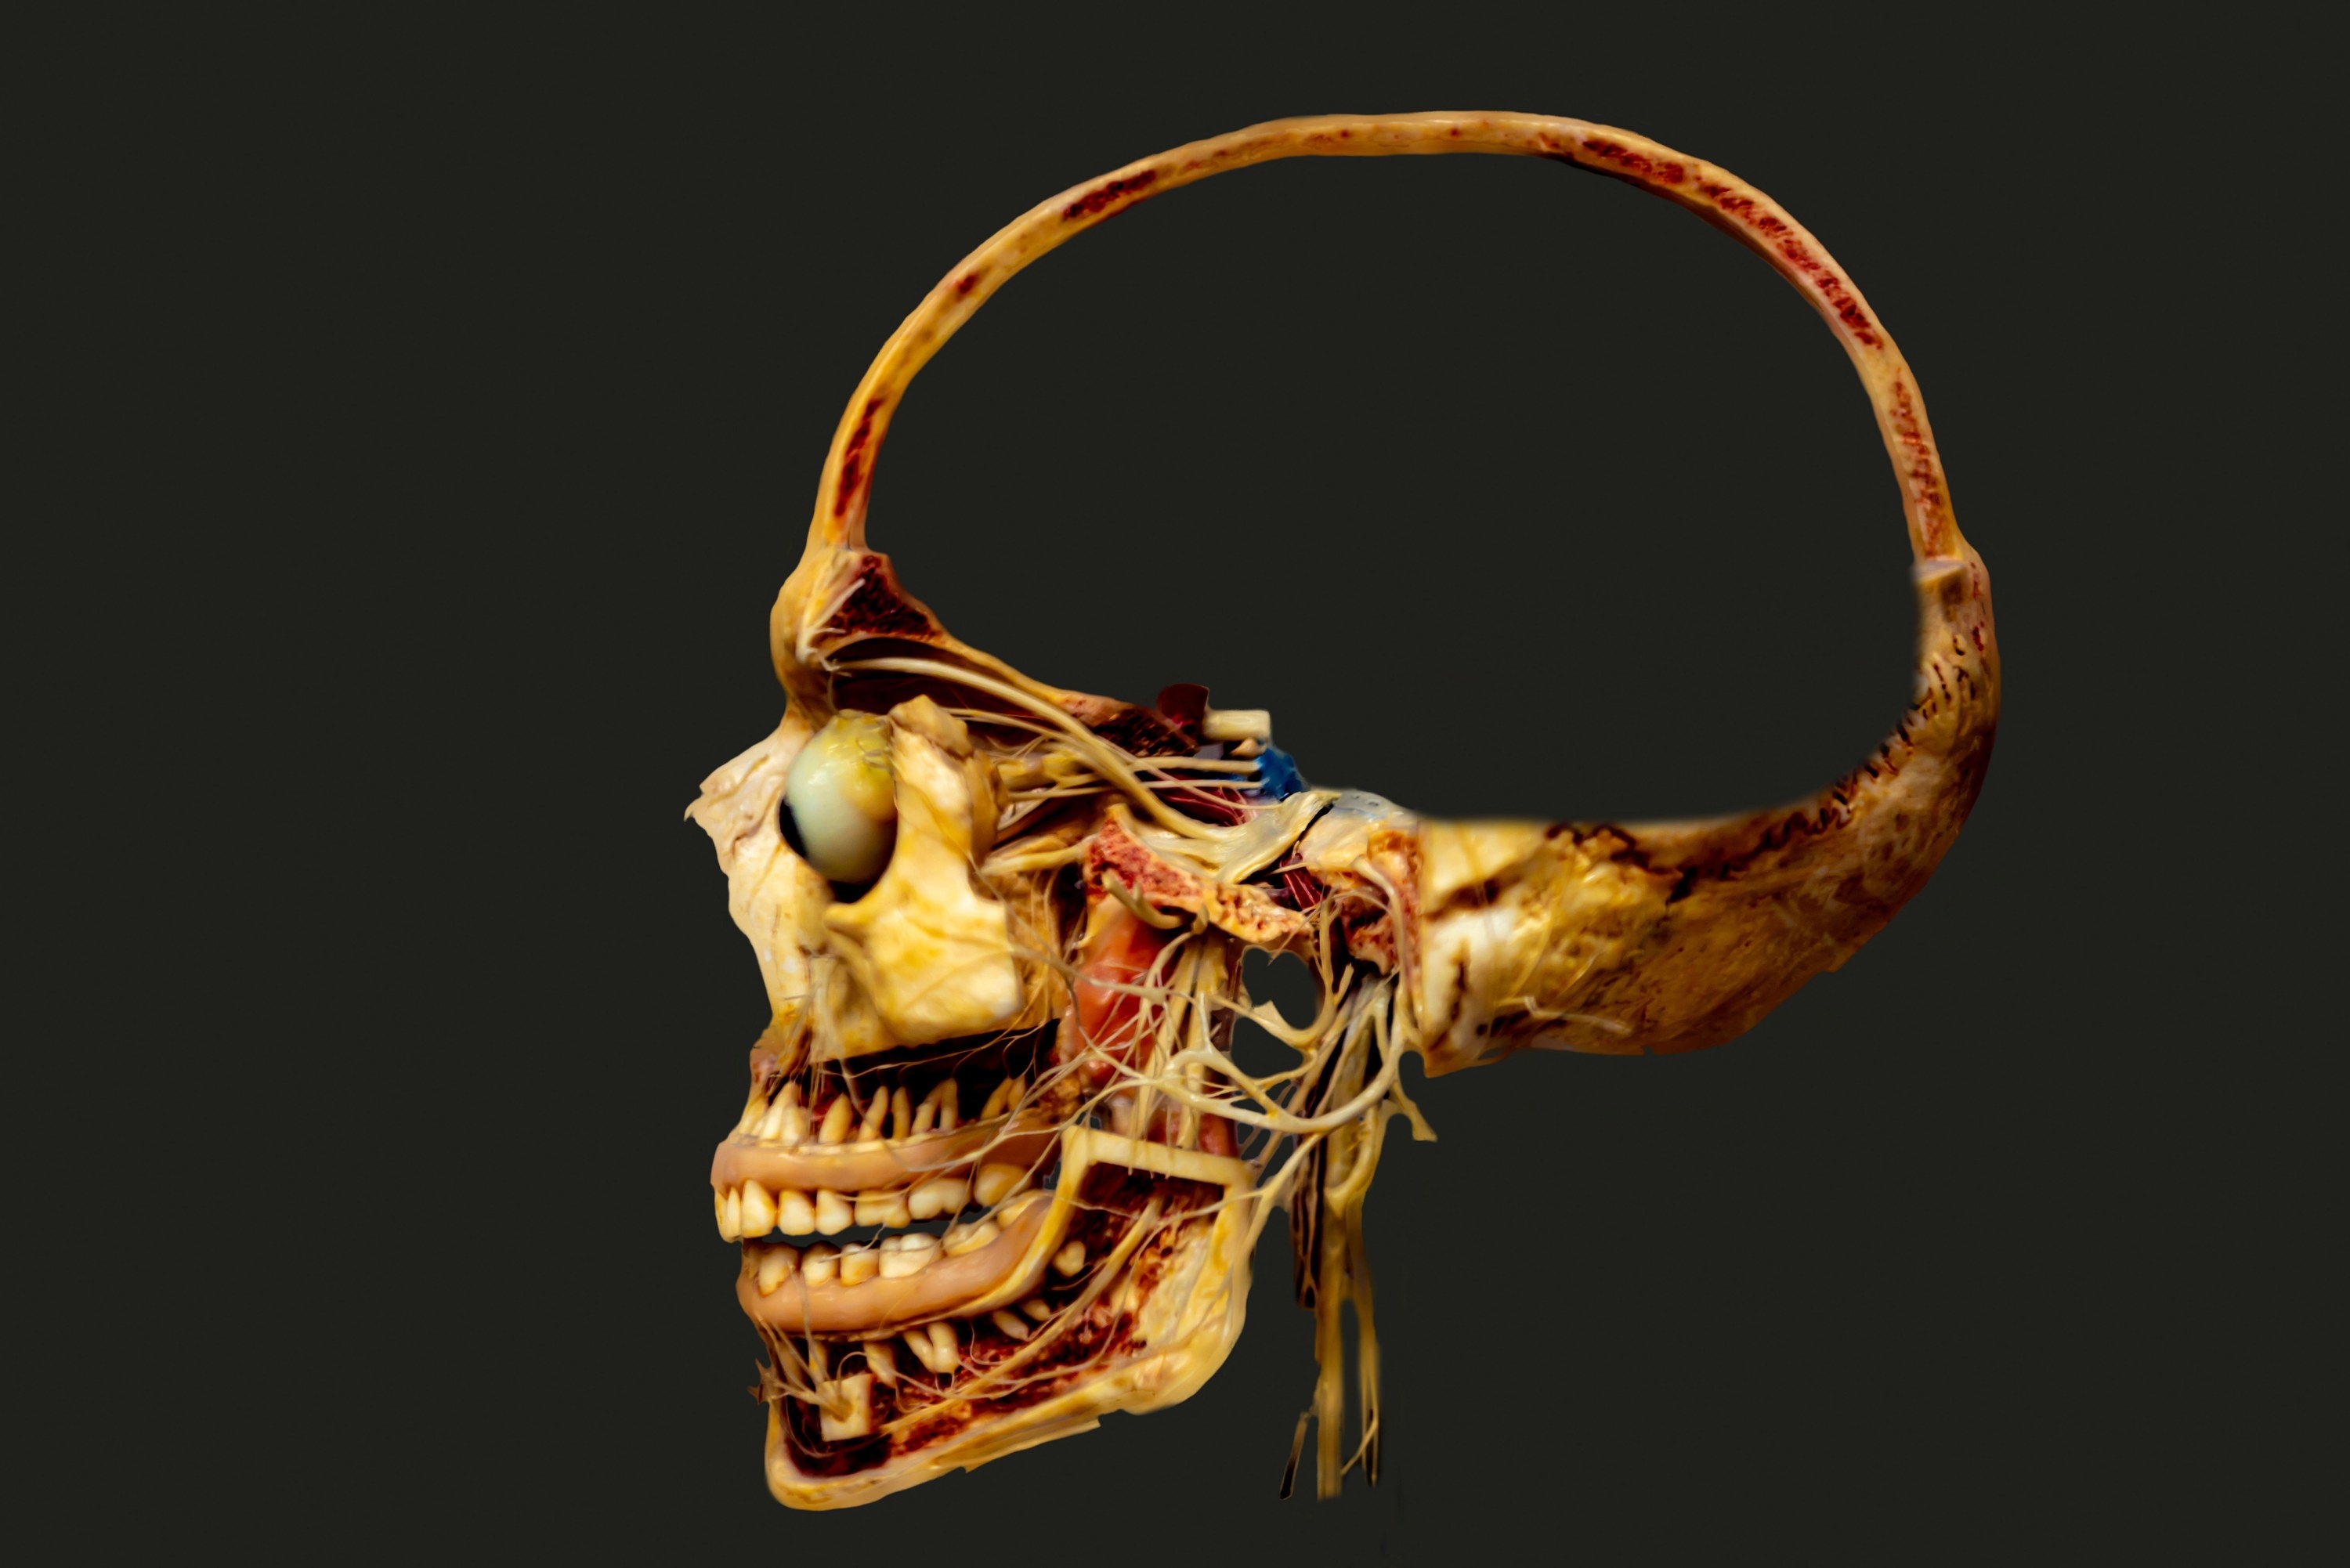 Half of a human skull